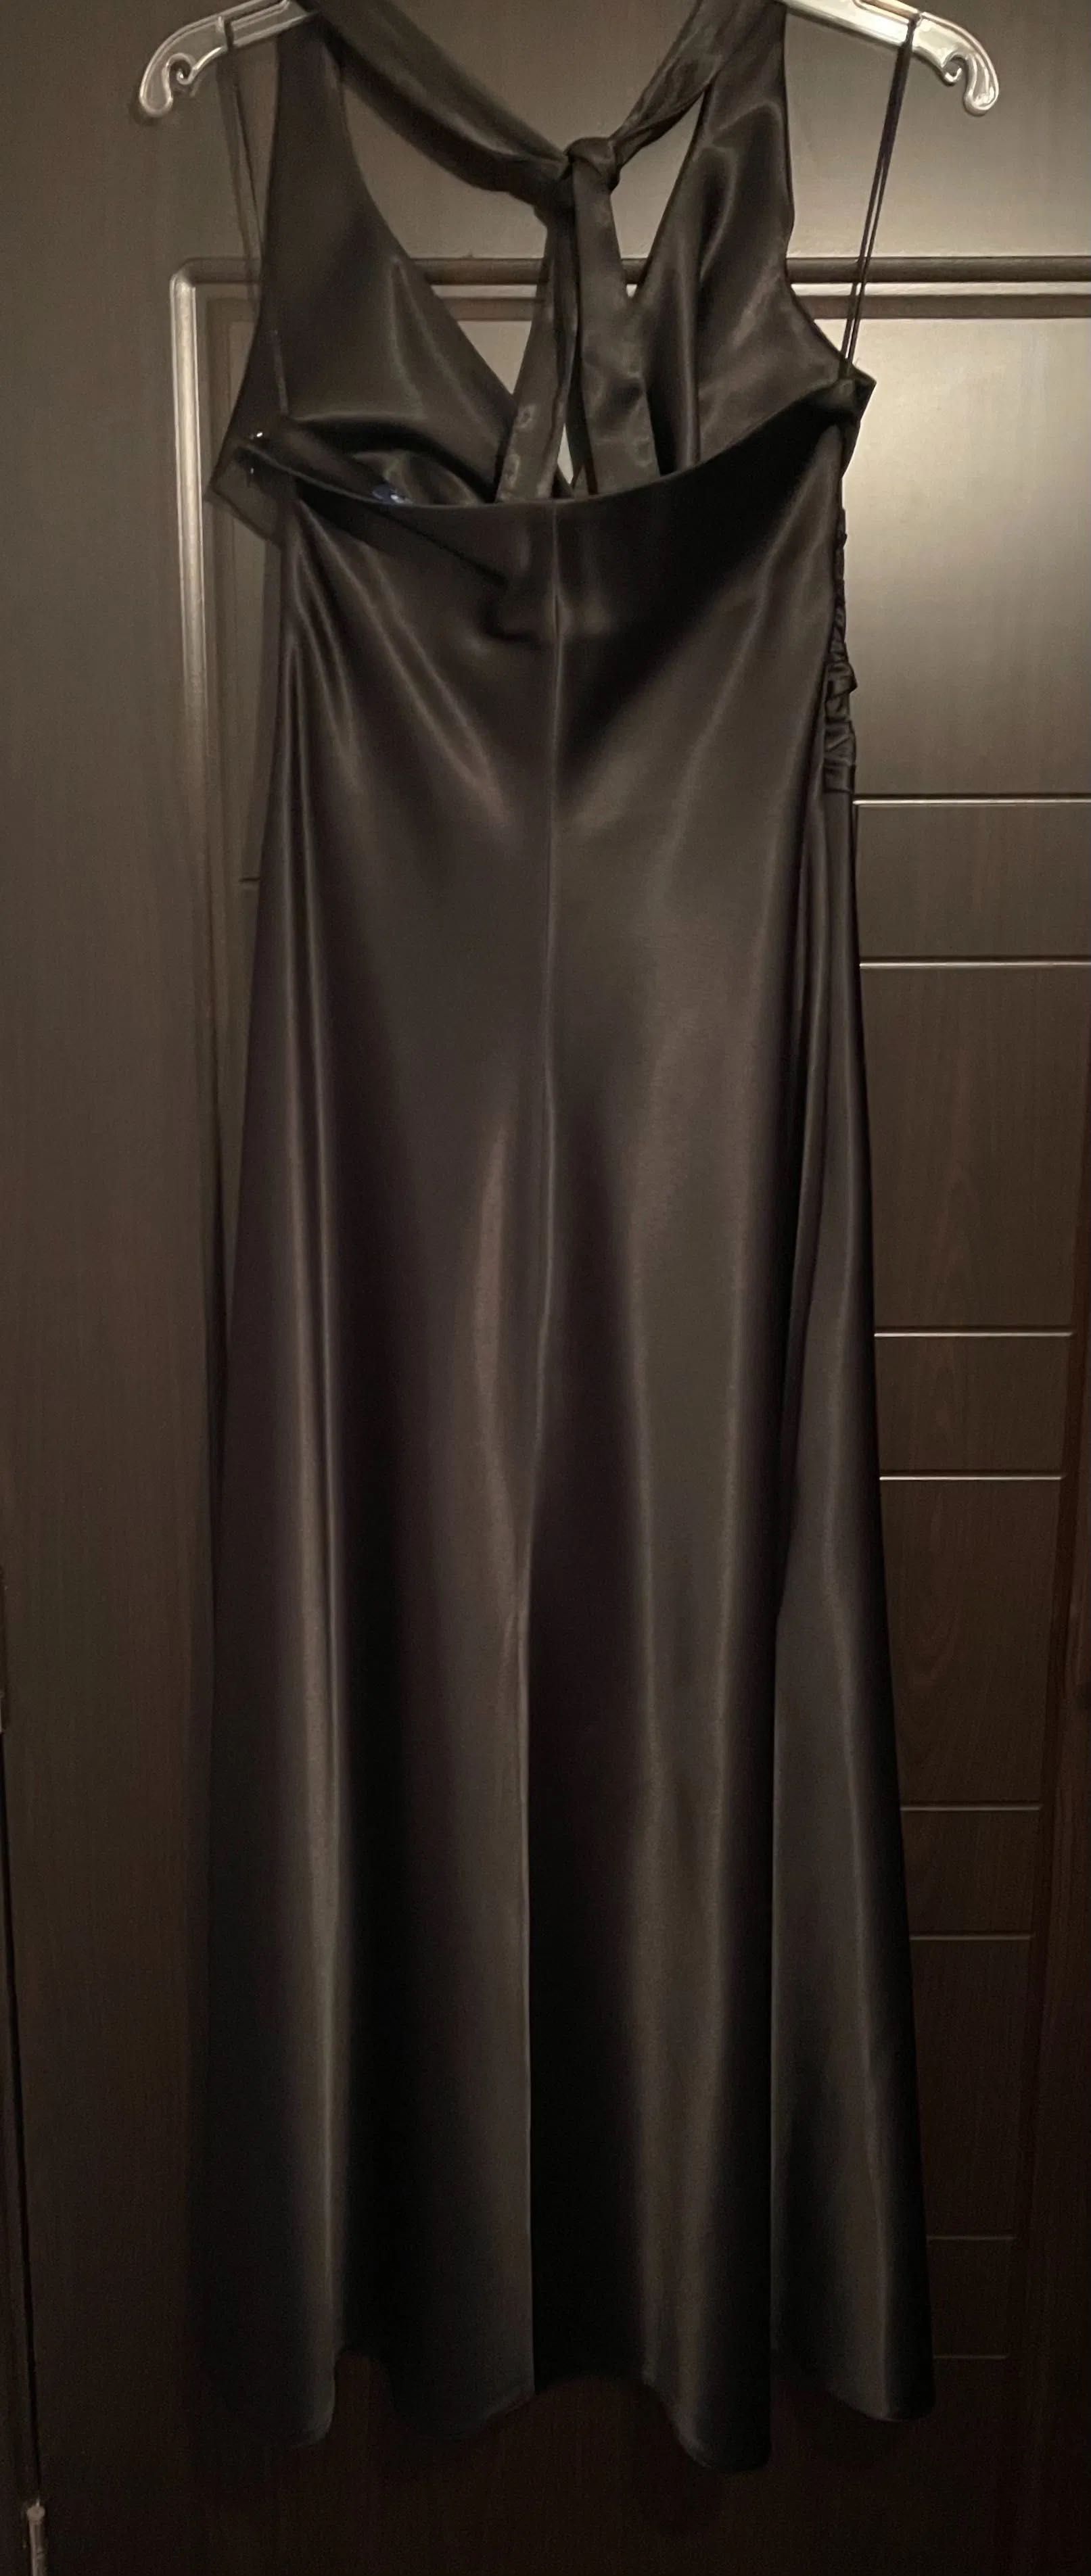 луксозна бална рокля сатенена черна стилна топ модел М/Л стил и класа